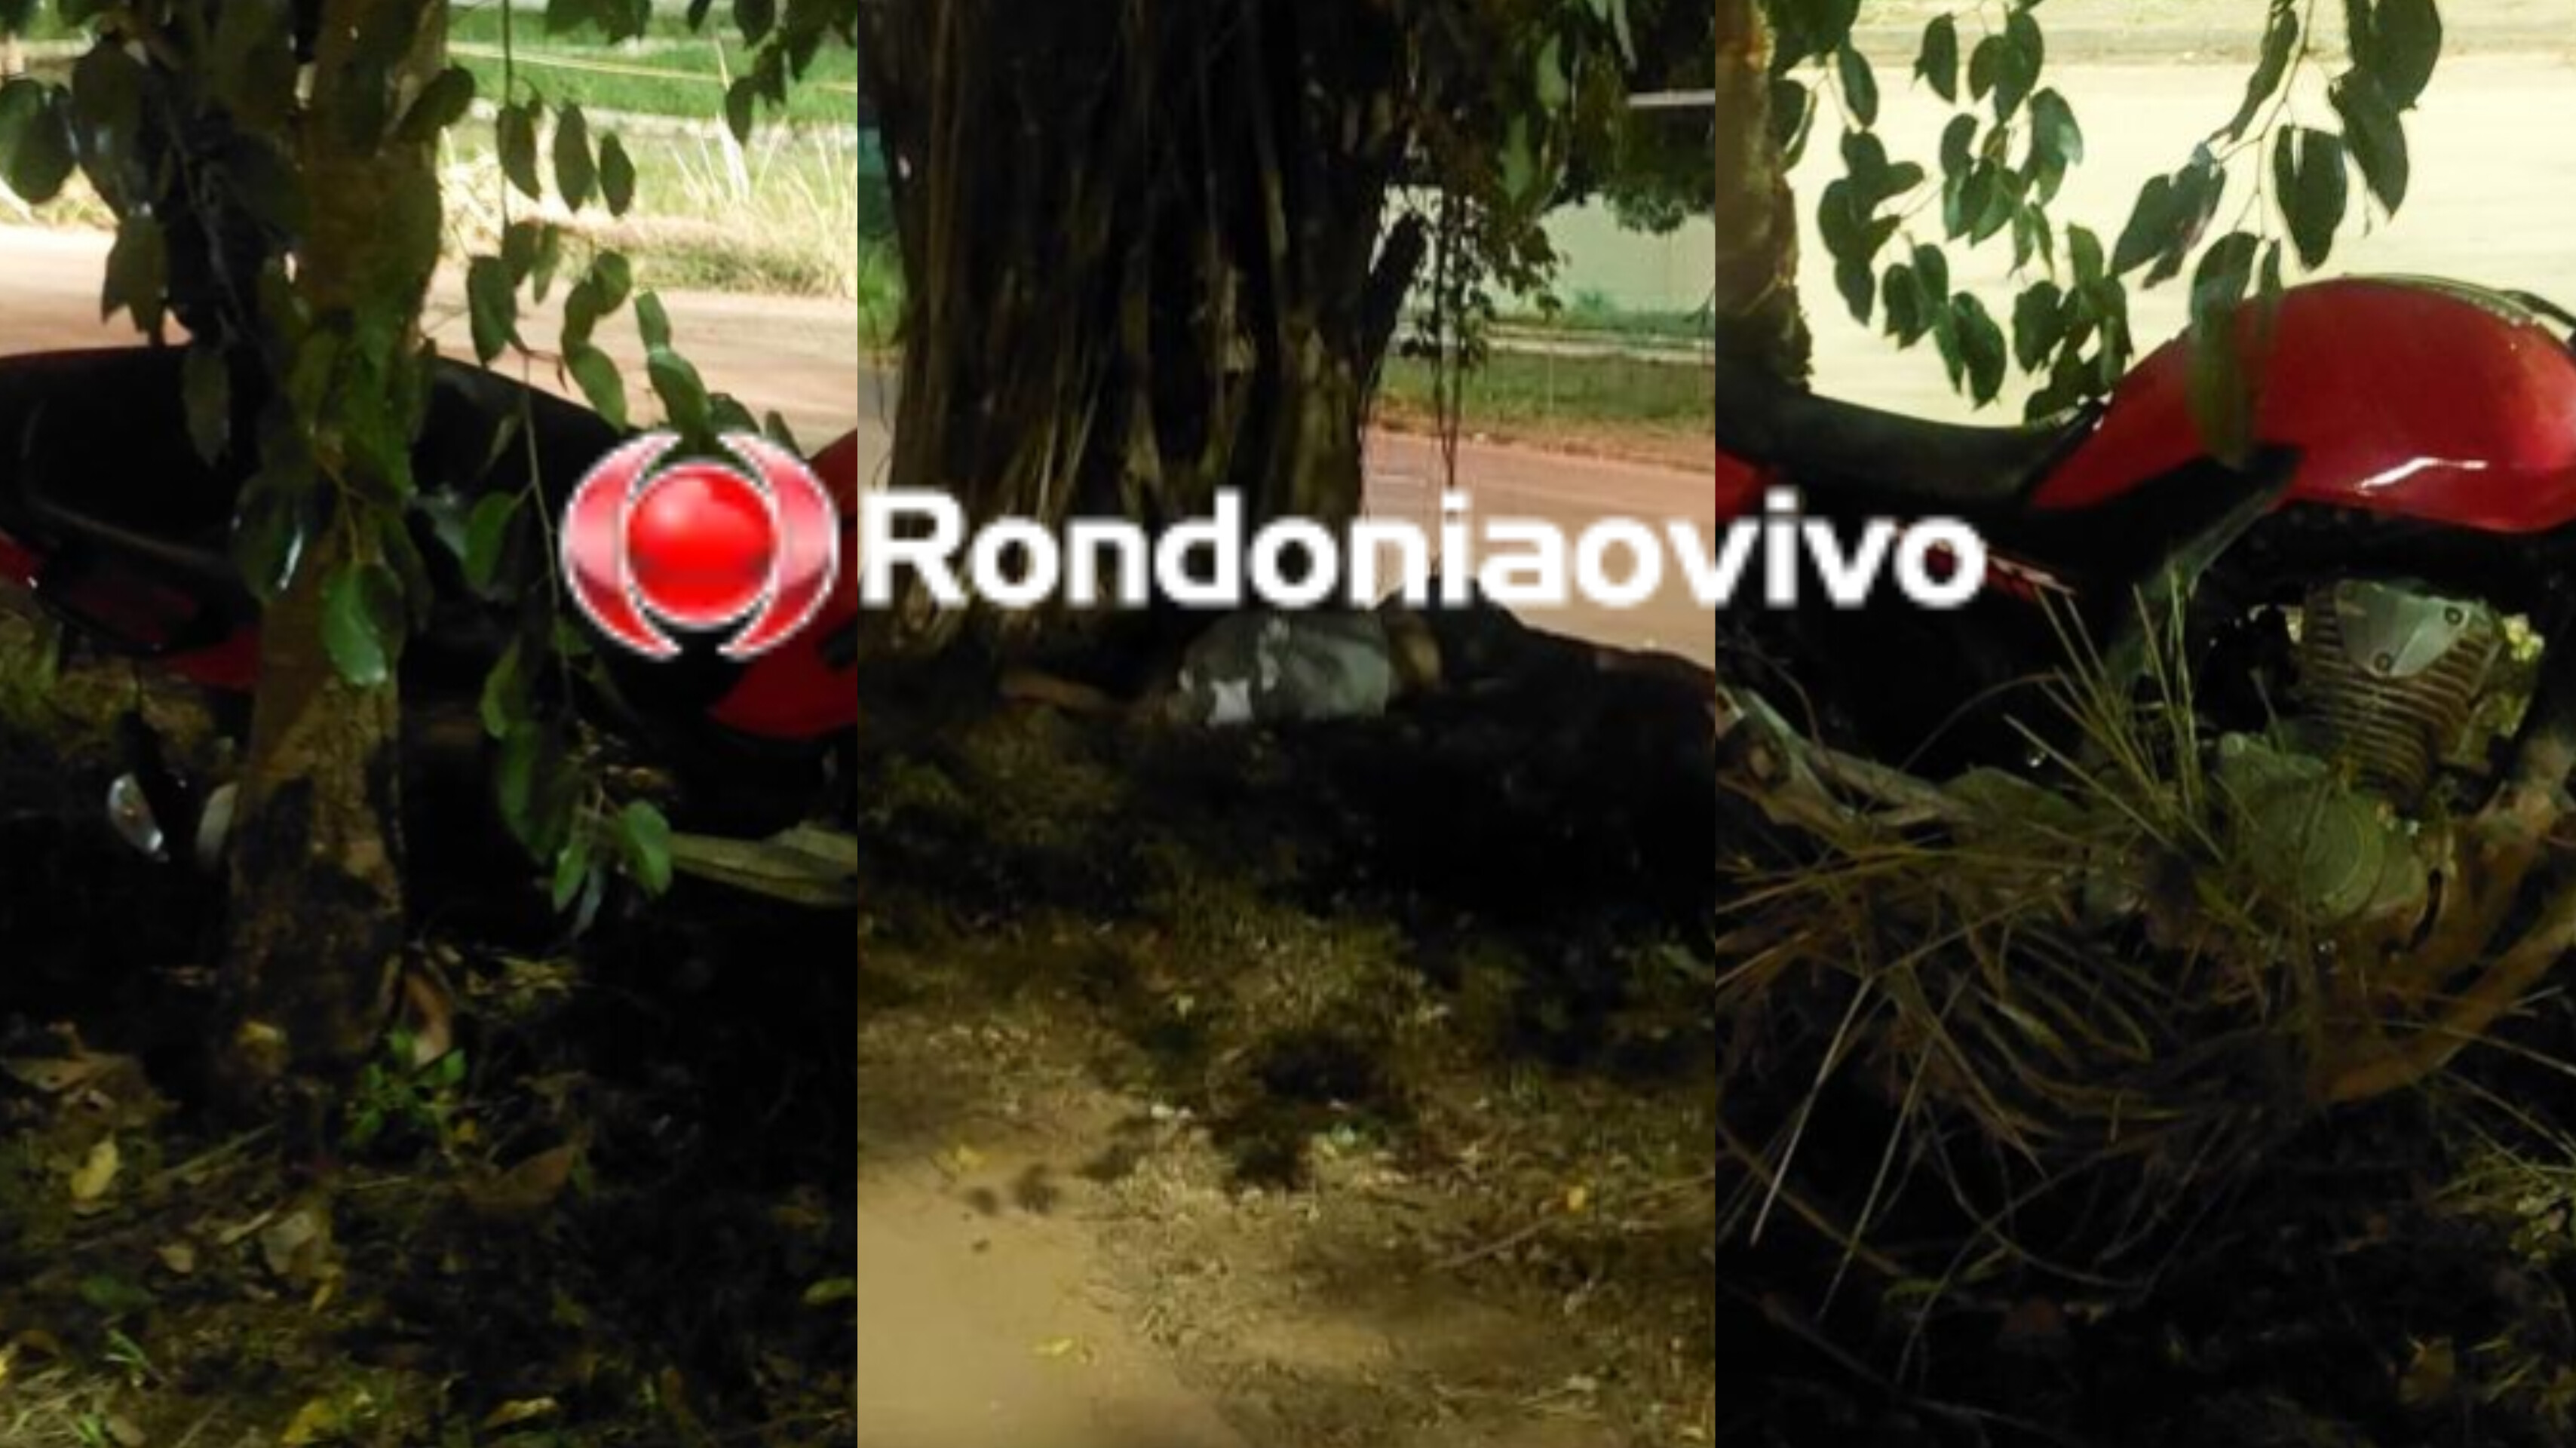 ESTADO GRAVE: Motociclista fica inconsciente após bater contra árvore no canteiro central 